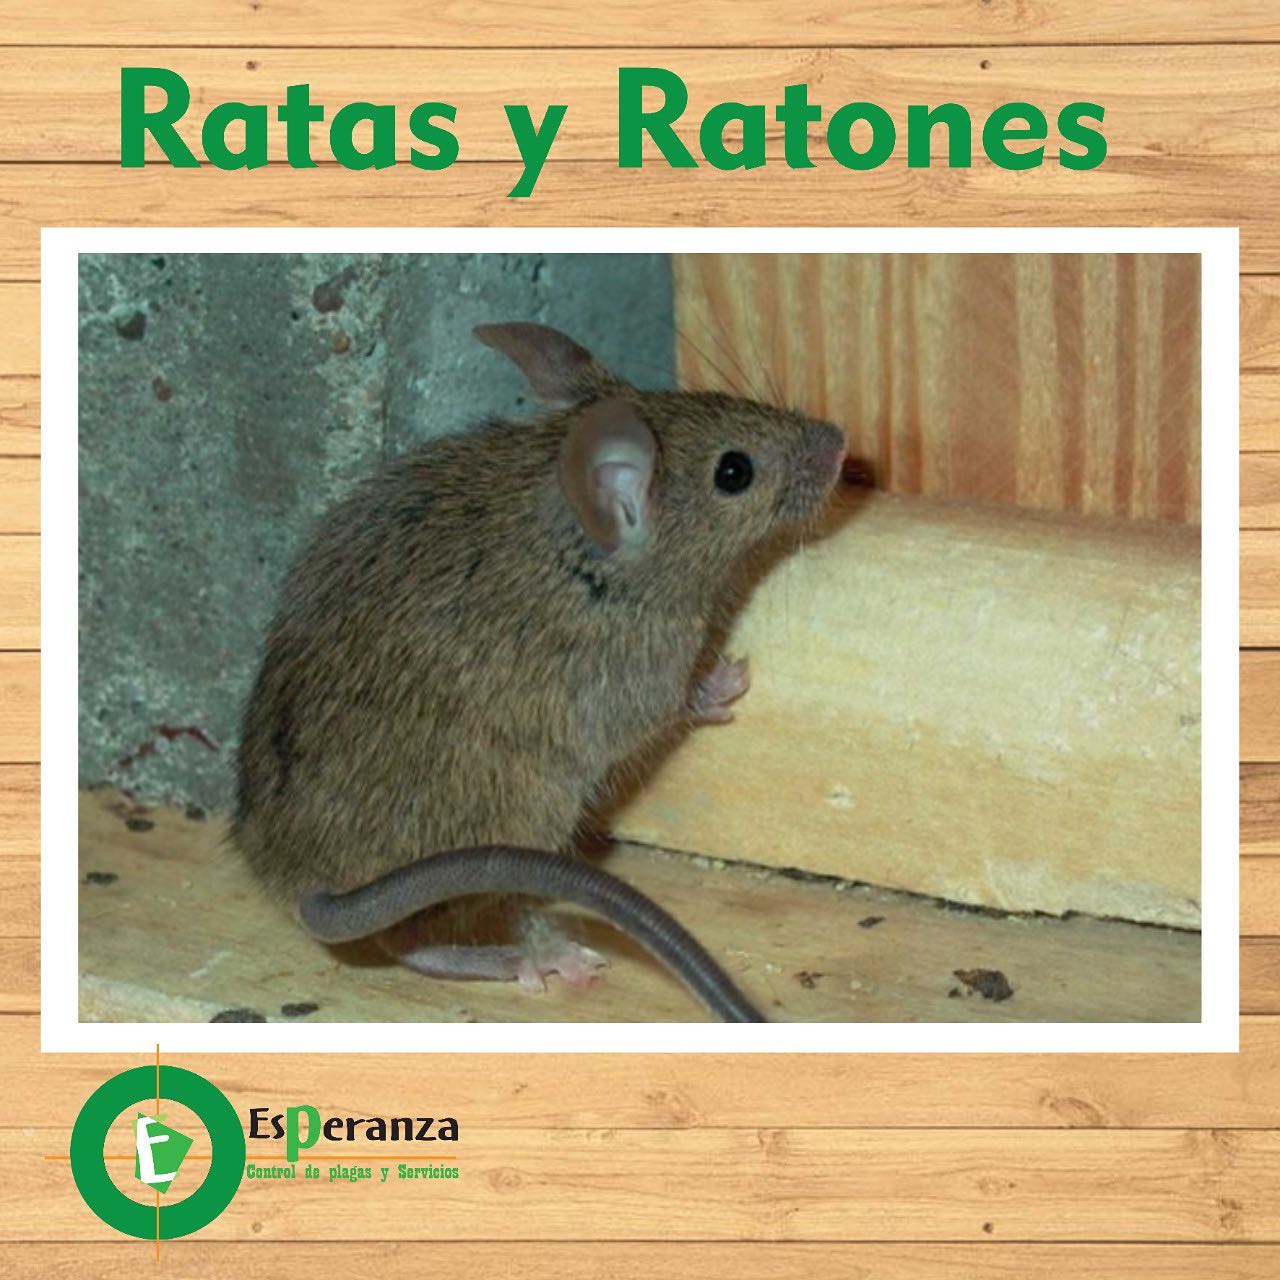 Tratamiento para Ratones Ratas y Roedores Foto 7165245-1.jpg